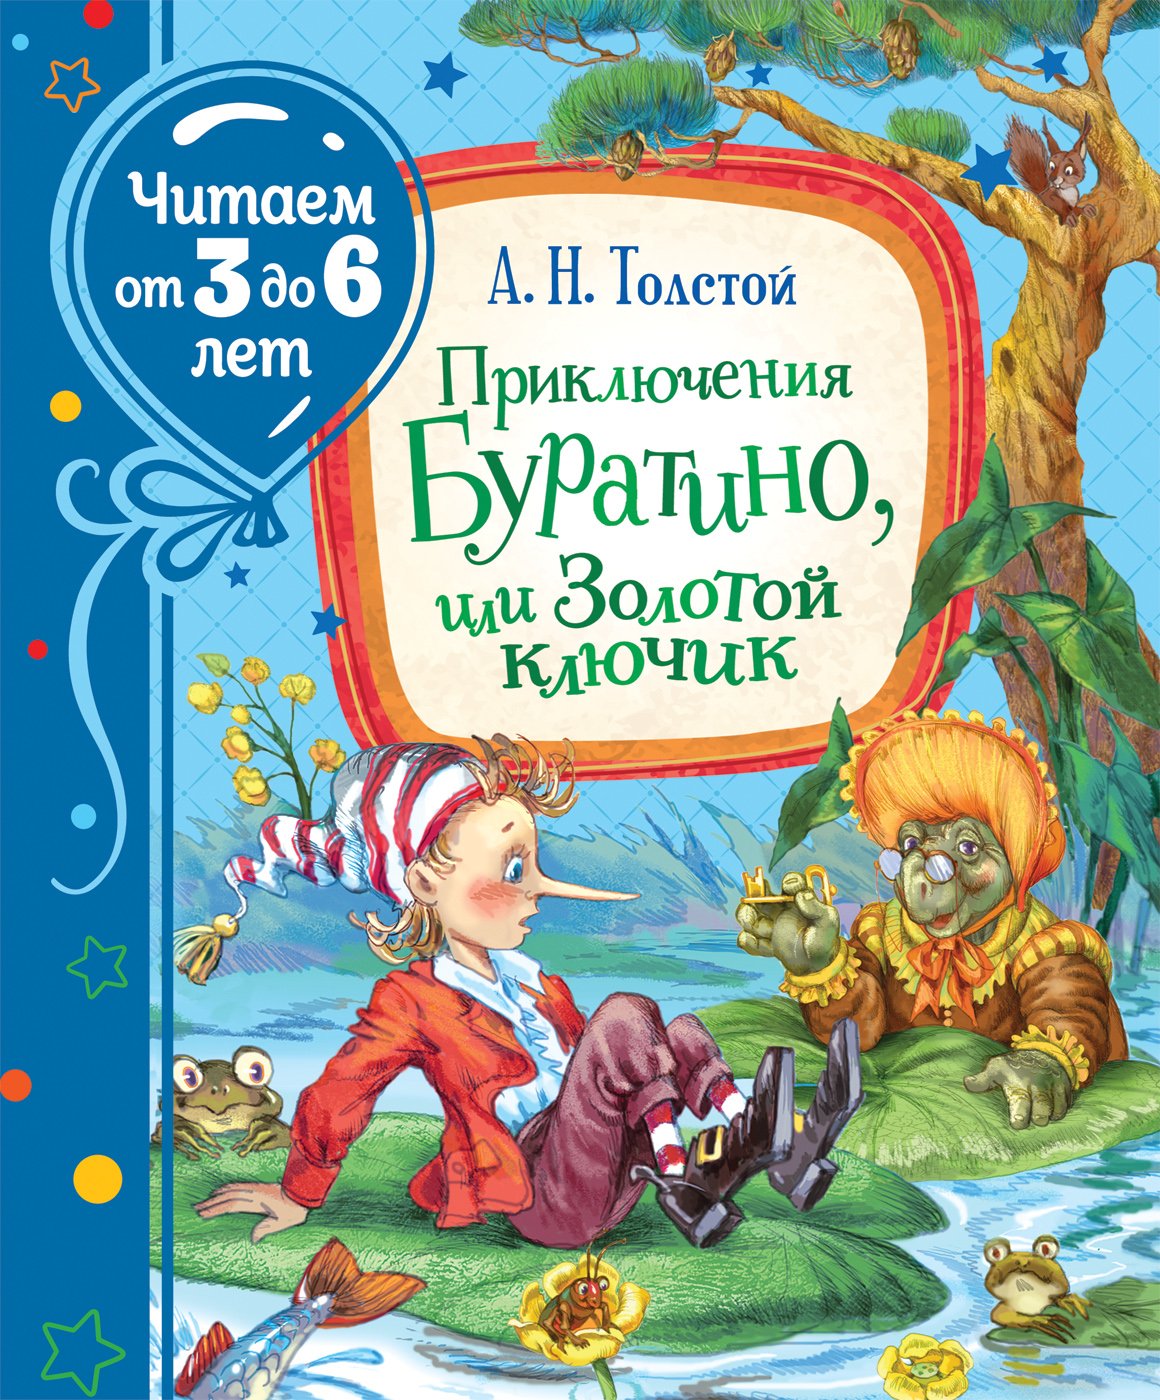 Приключения Буратино, или Золотой ключик  (Читаем от 3 до 6 лет). Толстой Алексей Николаевич